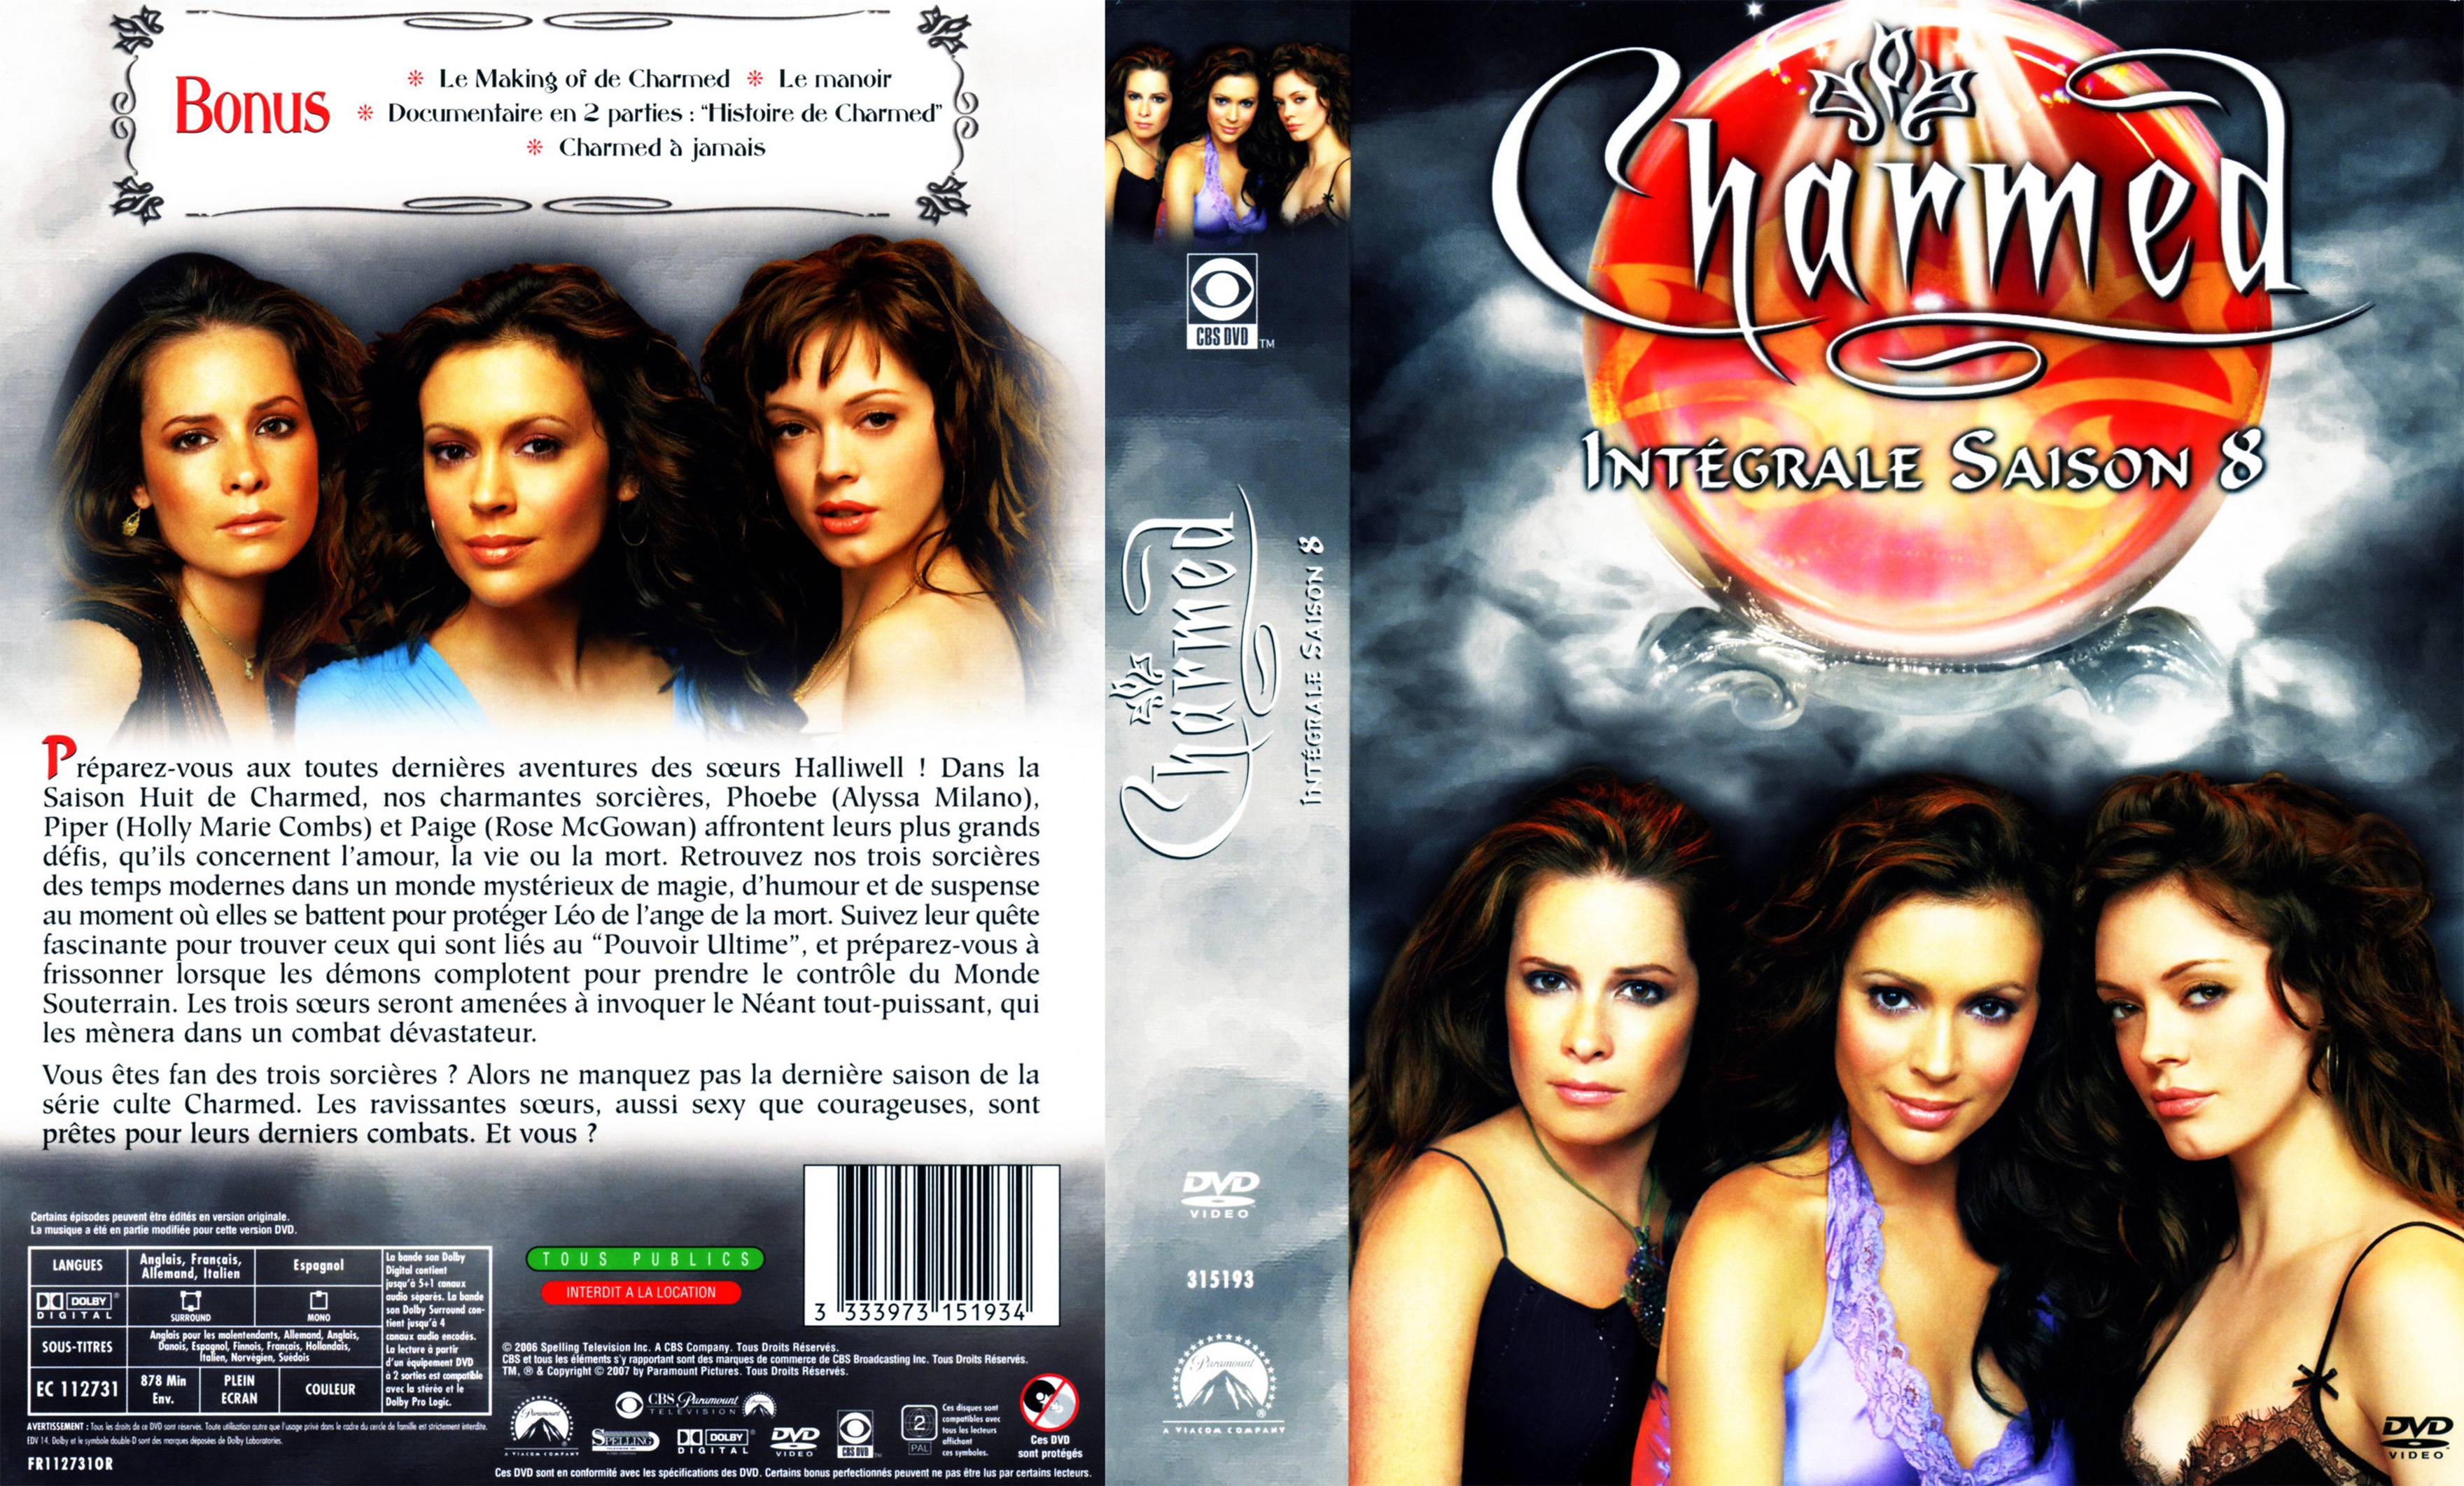 Jaquette DVD Charmed Saison 8 COFFRET v2